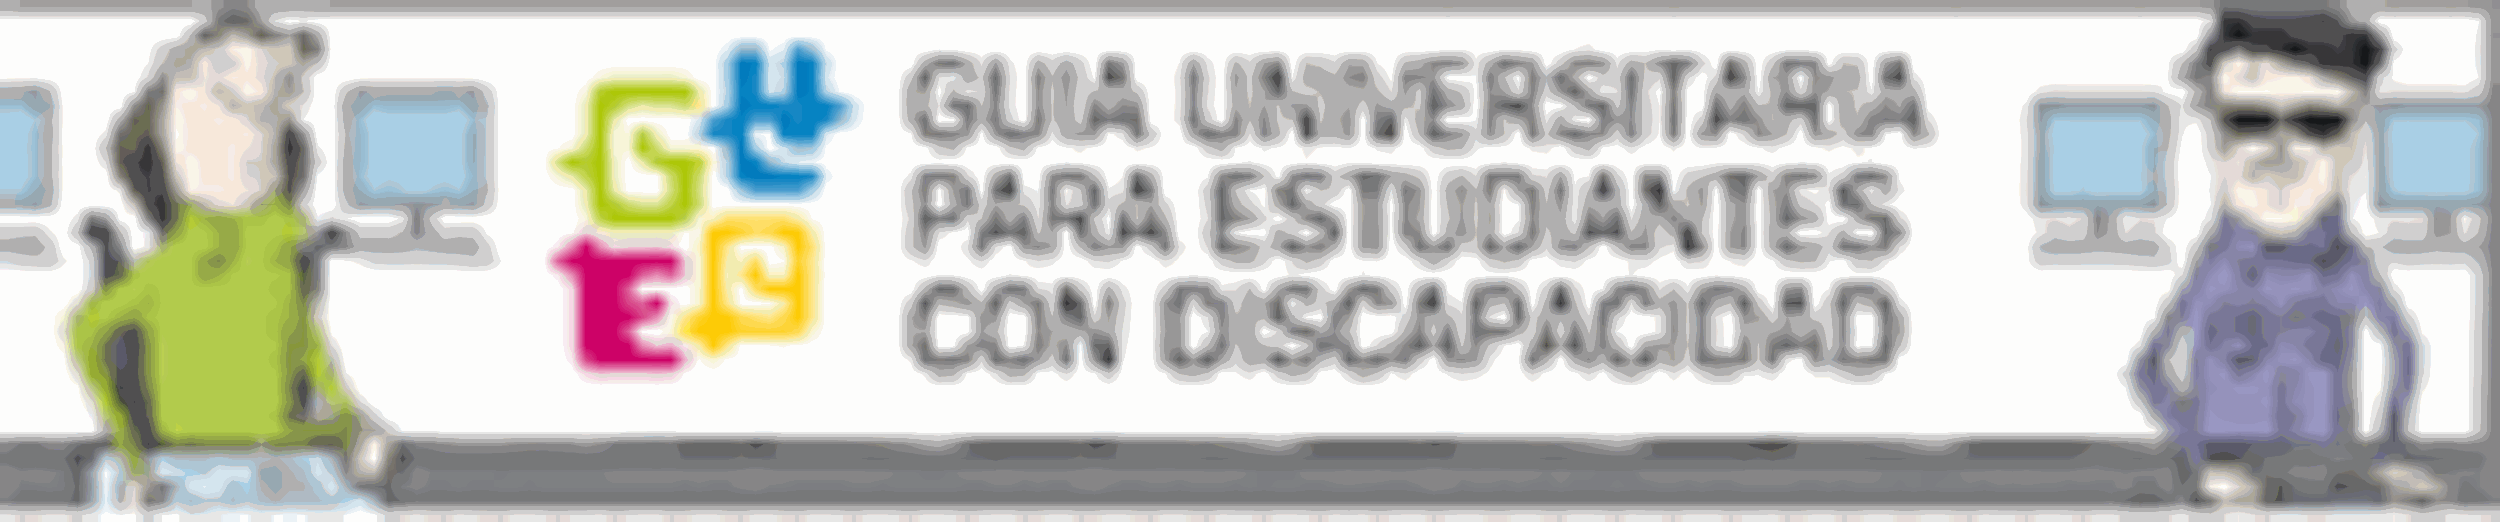 Logo Guía Universitaria para estudiantes con discapacidad